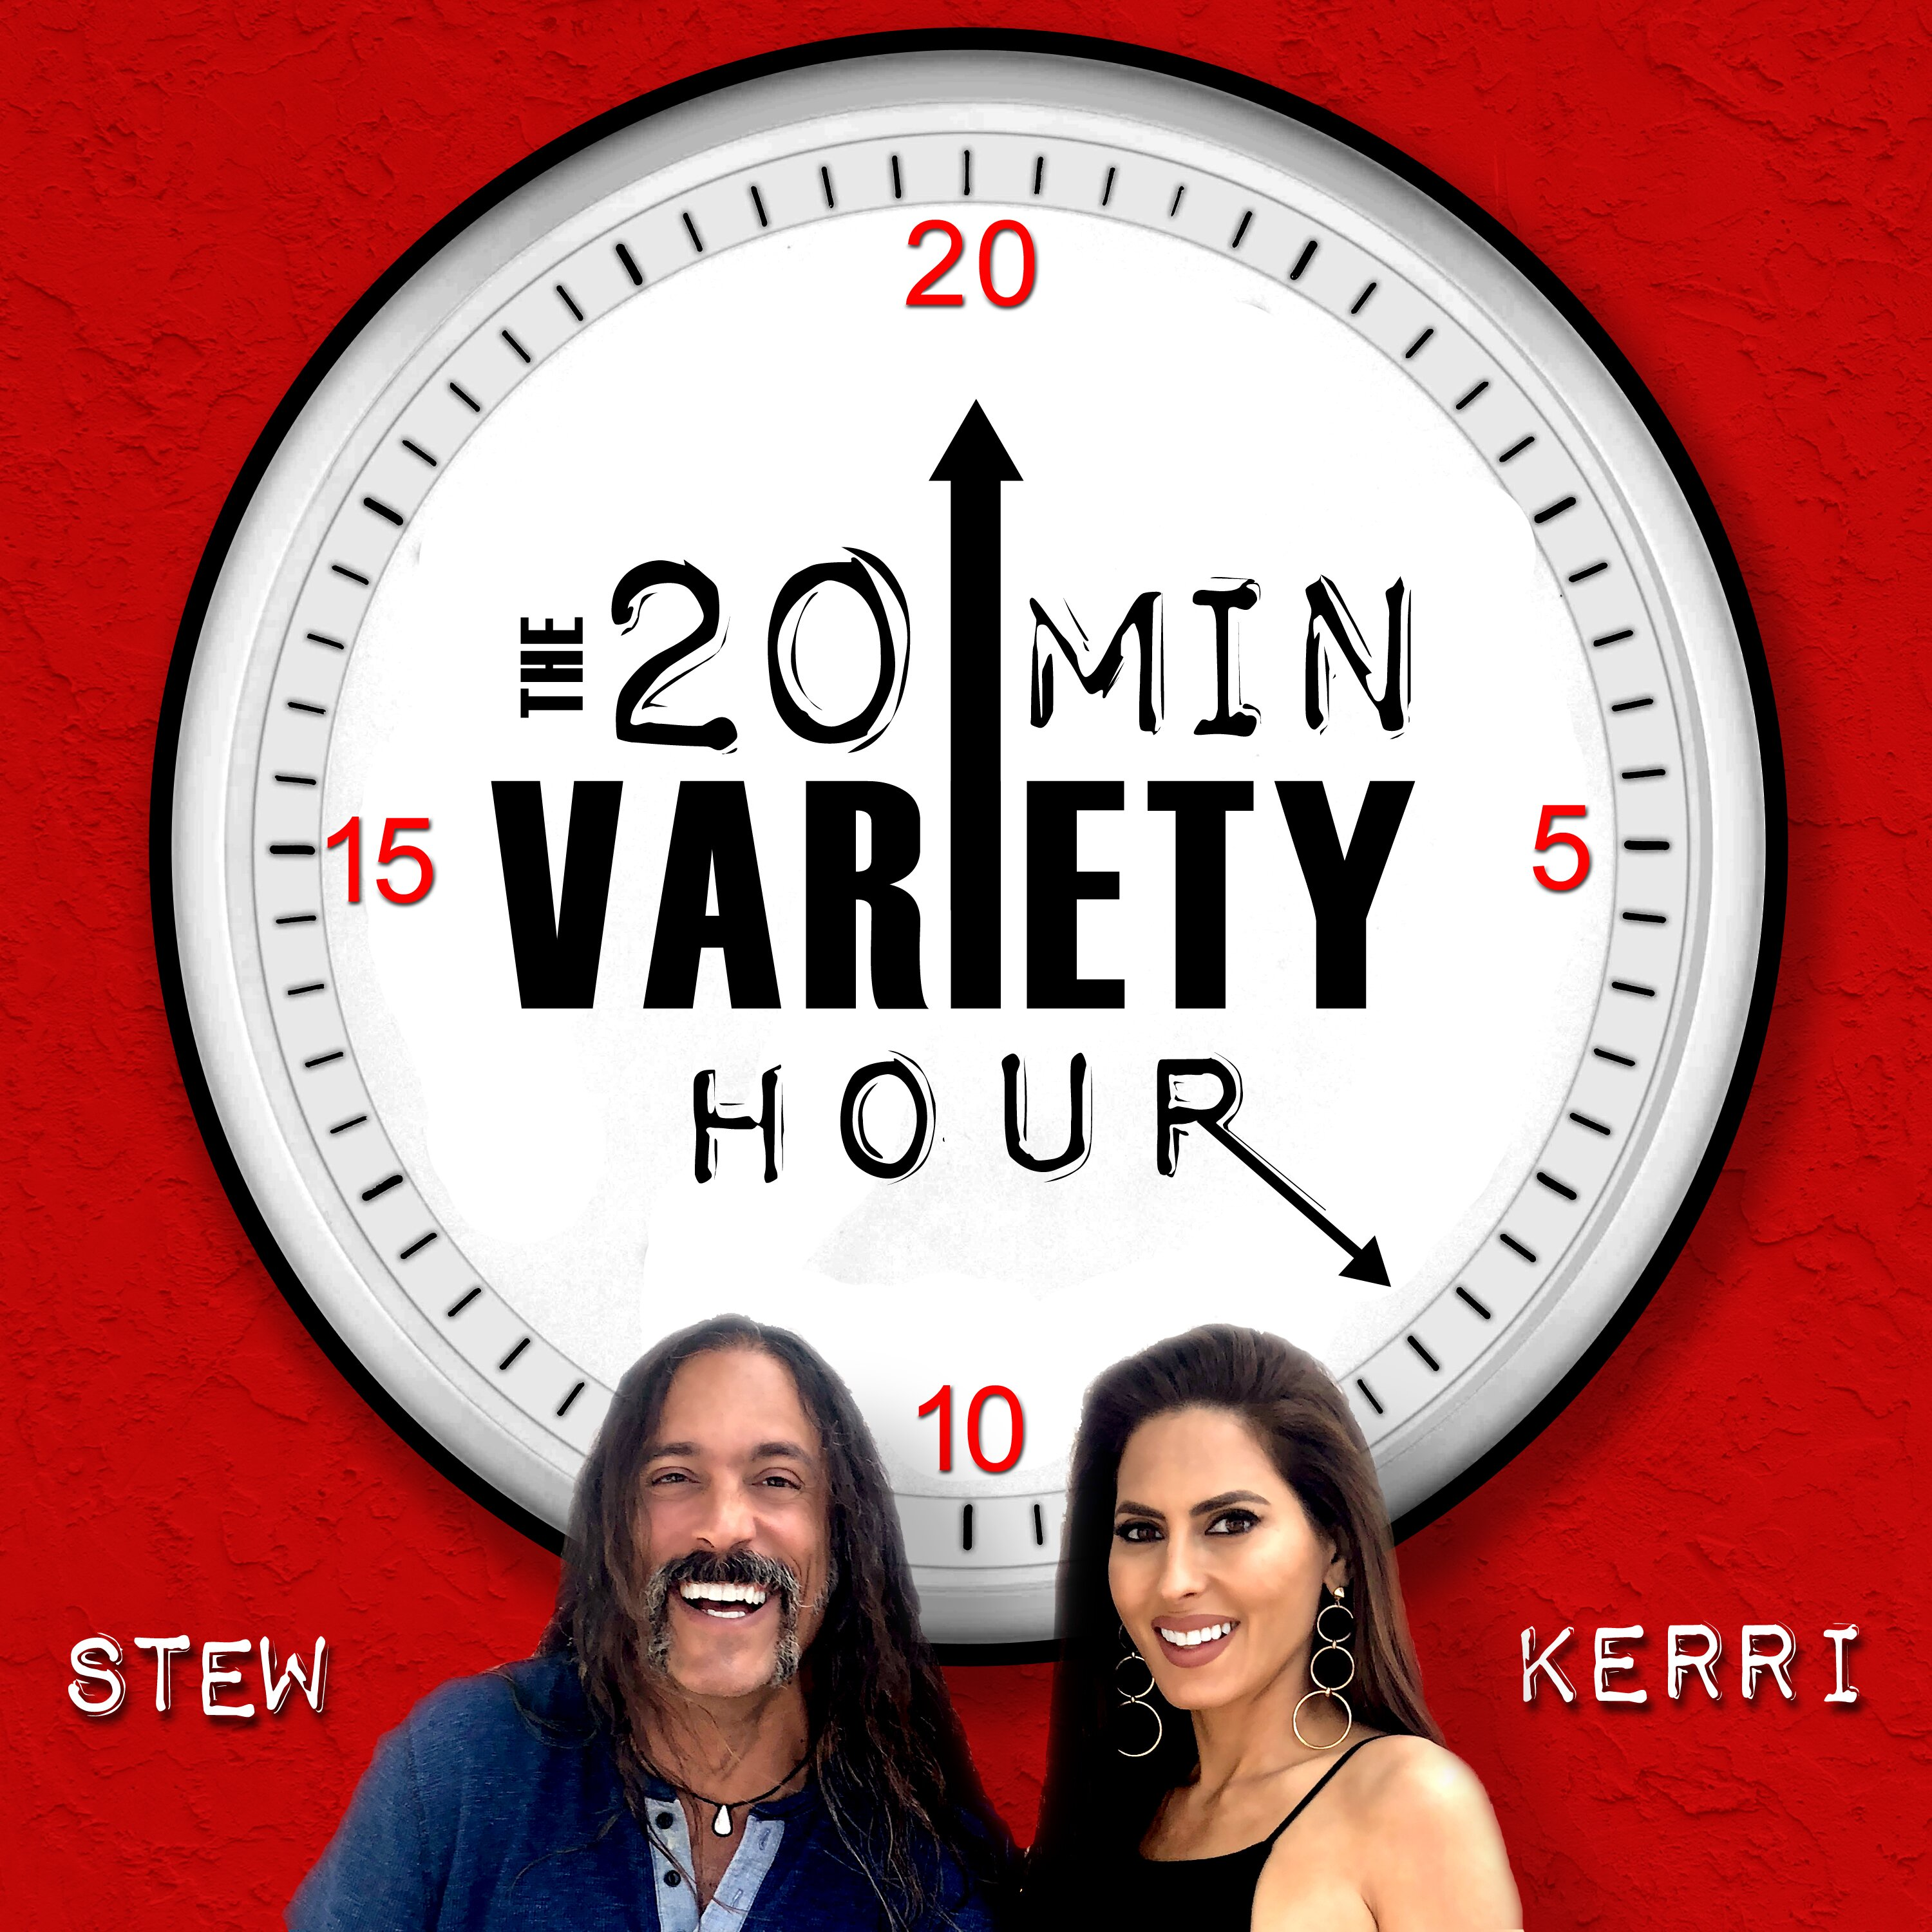 20 Min Variety Hour: Episode 7